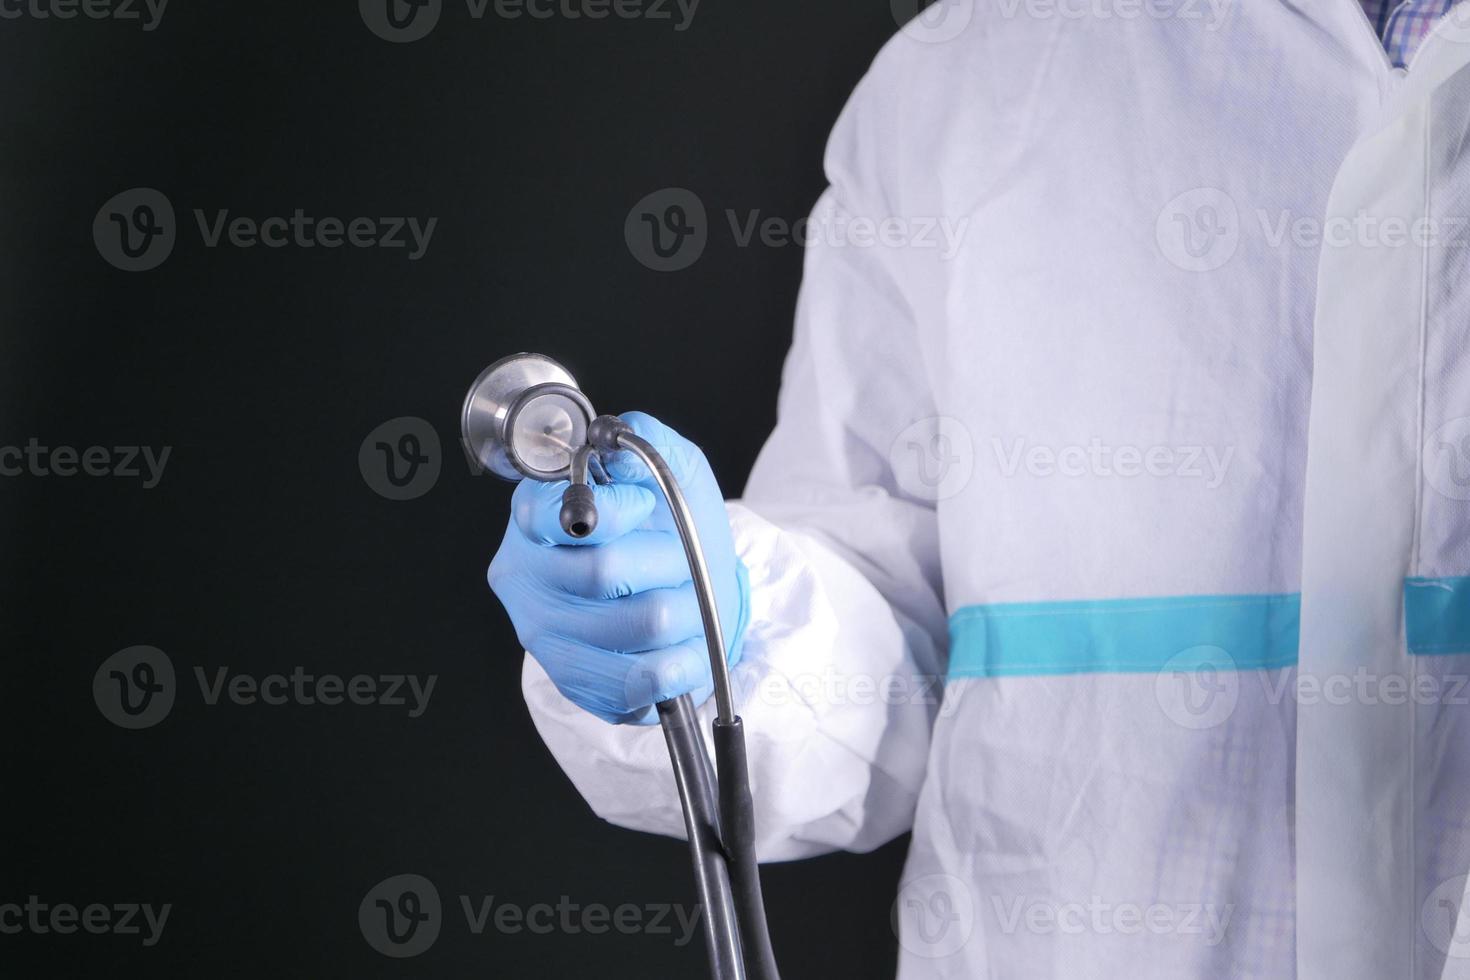 läkarens hand i skyddshandskar som håller stetoskopet foto